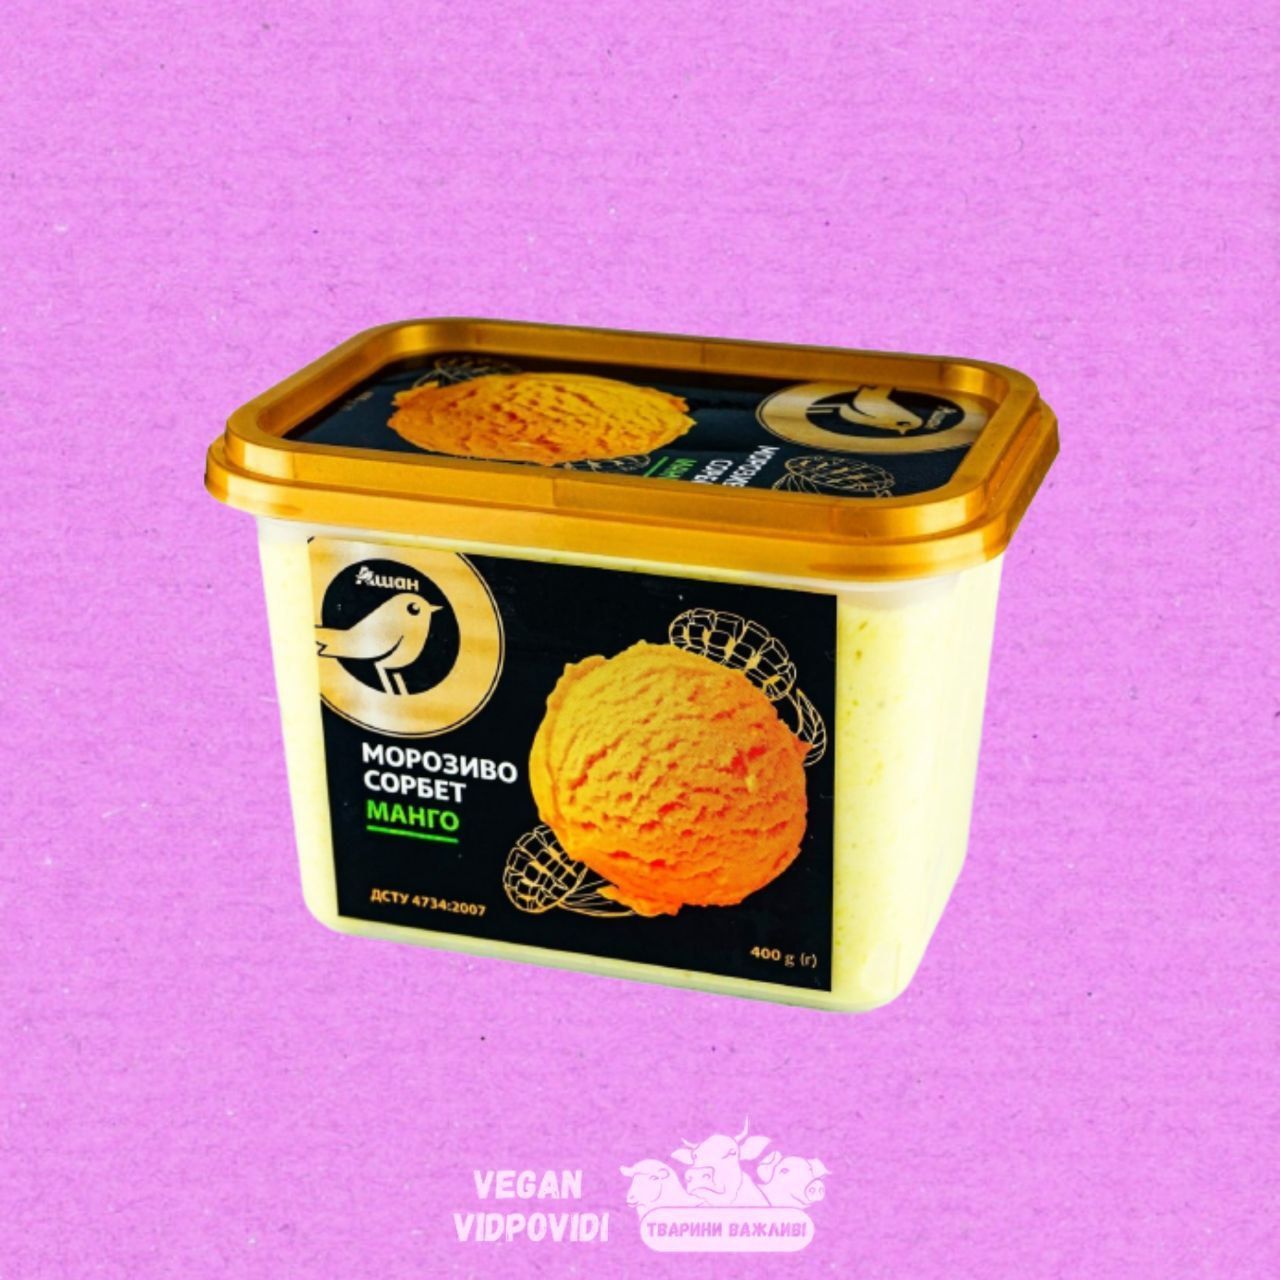 Морозиво Ашан сорбет манго